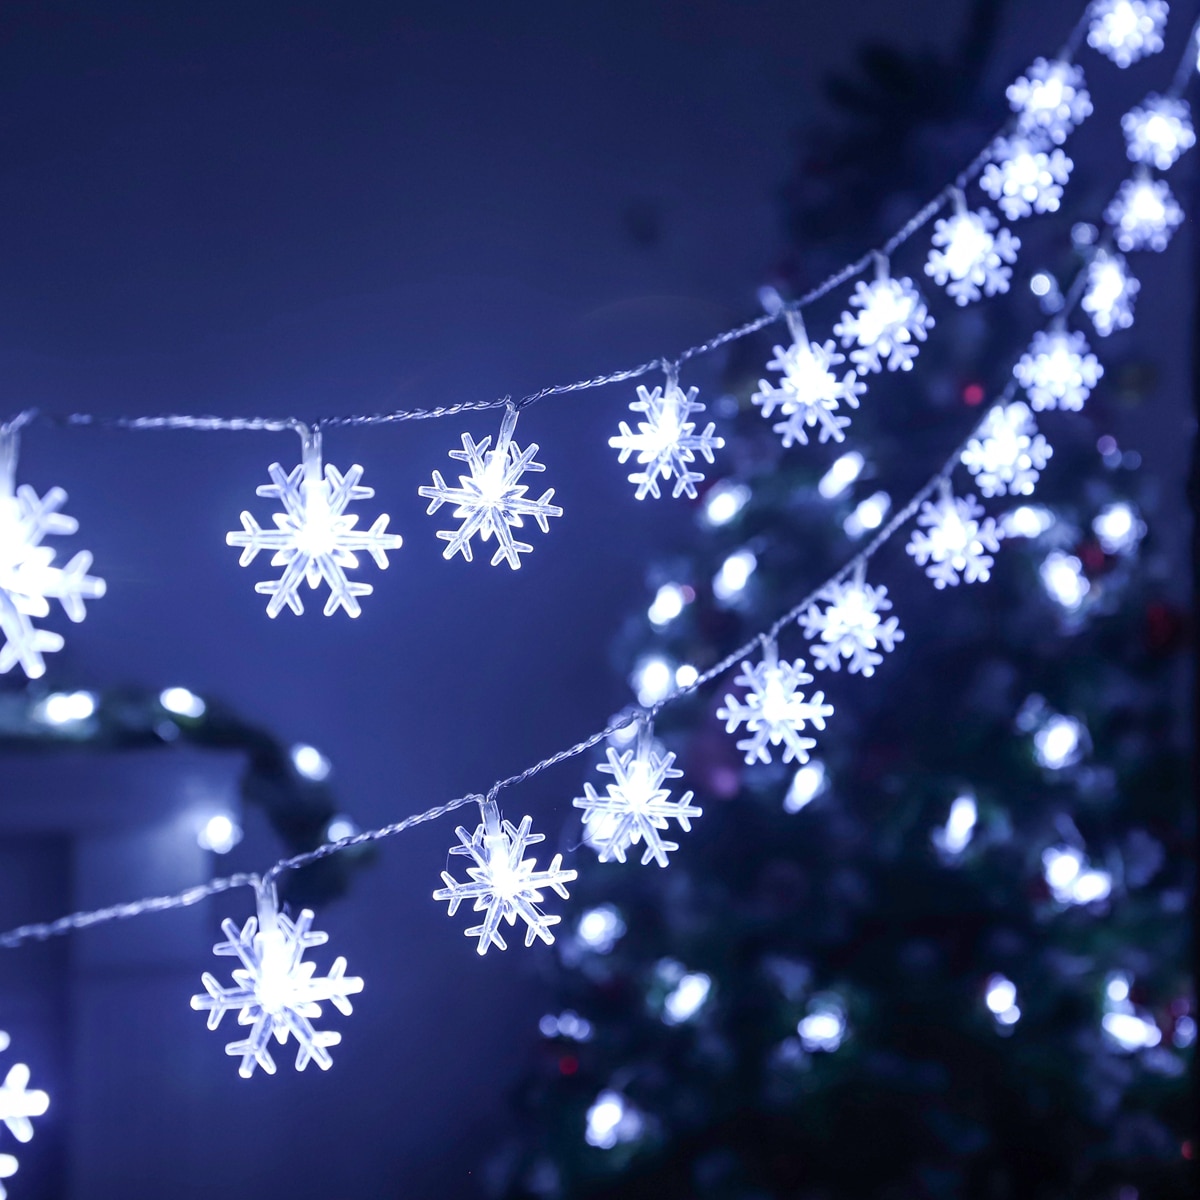 Snowflake LED Light Christmas Decor Hanging Garland